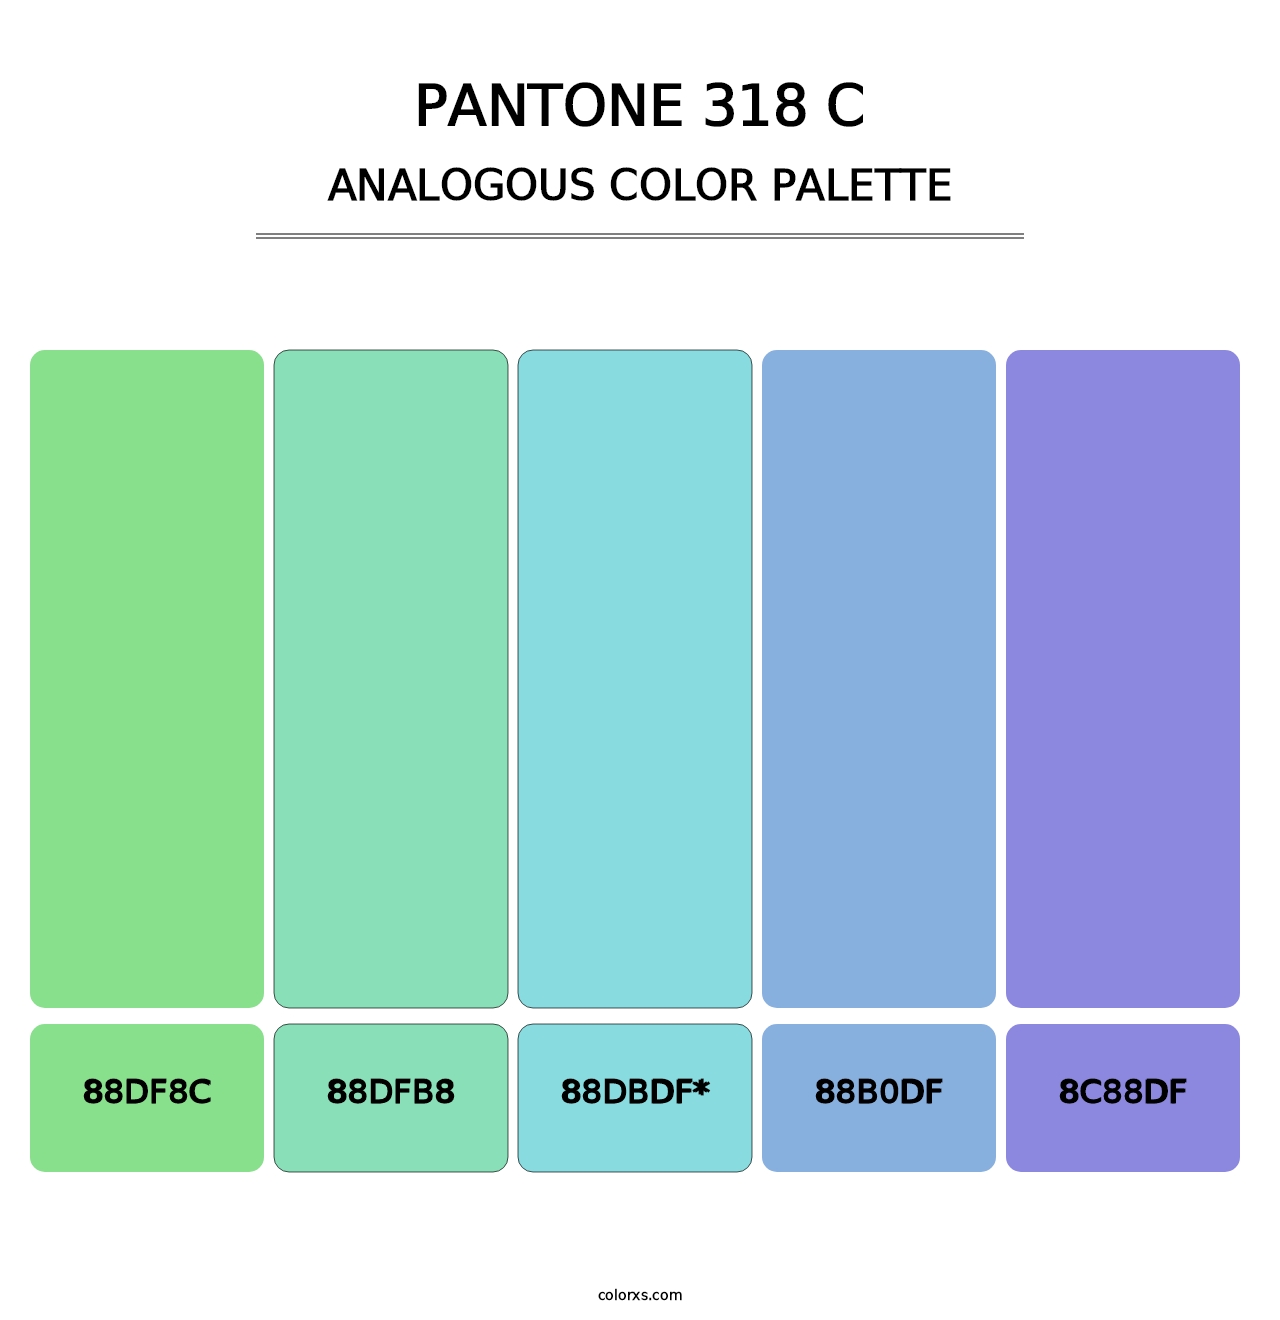 PANTONE 318 C - Analogous Color Palette